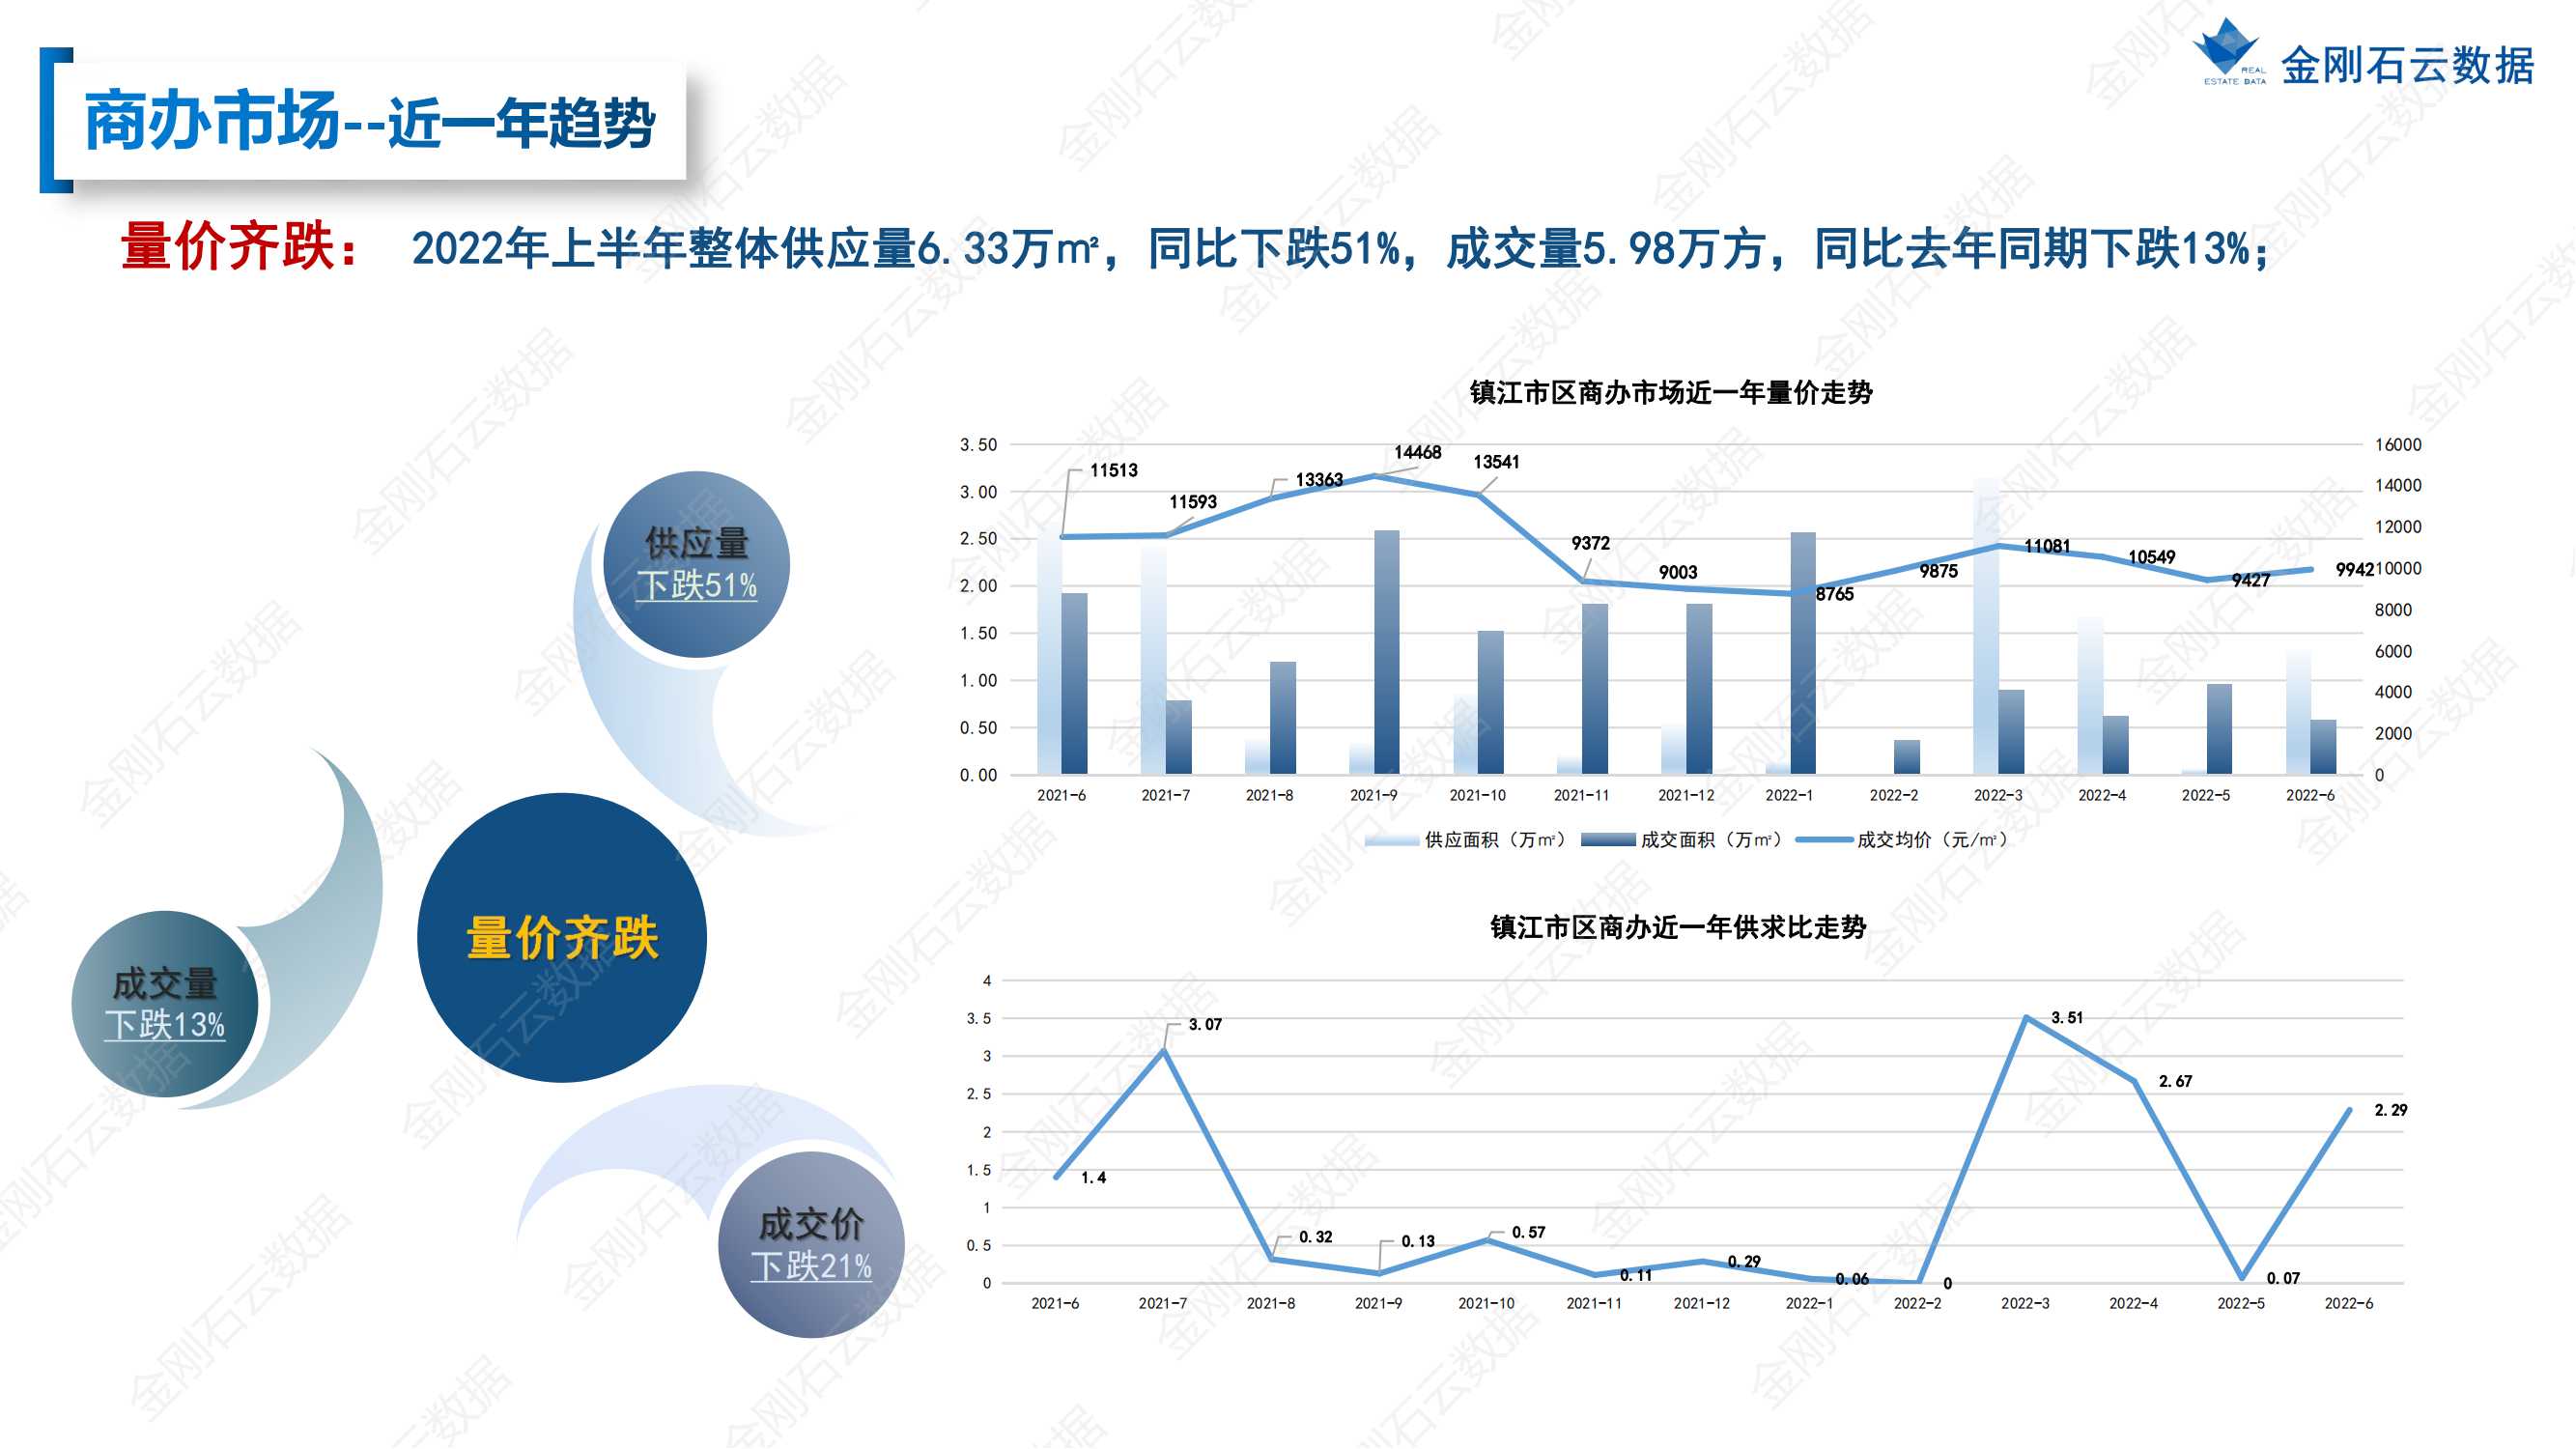 【江苏镇江】2022年上半年度市场报告(图37)